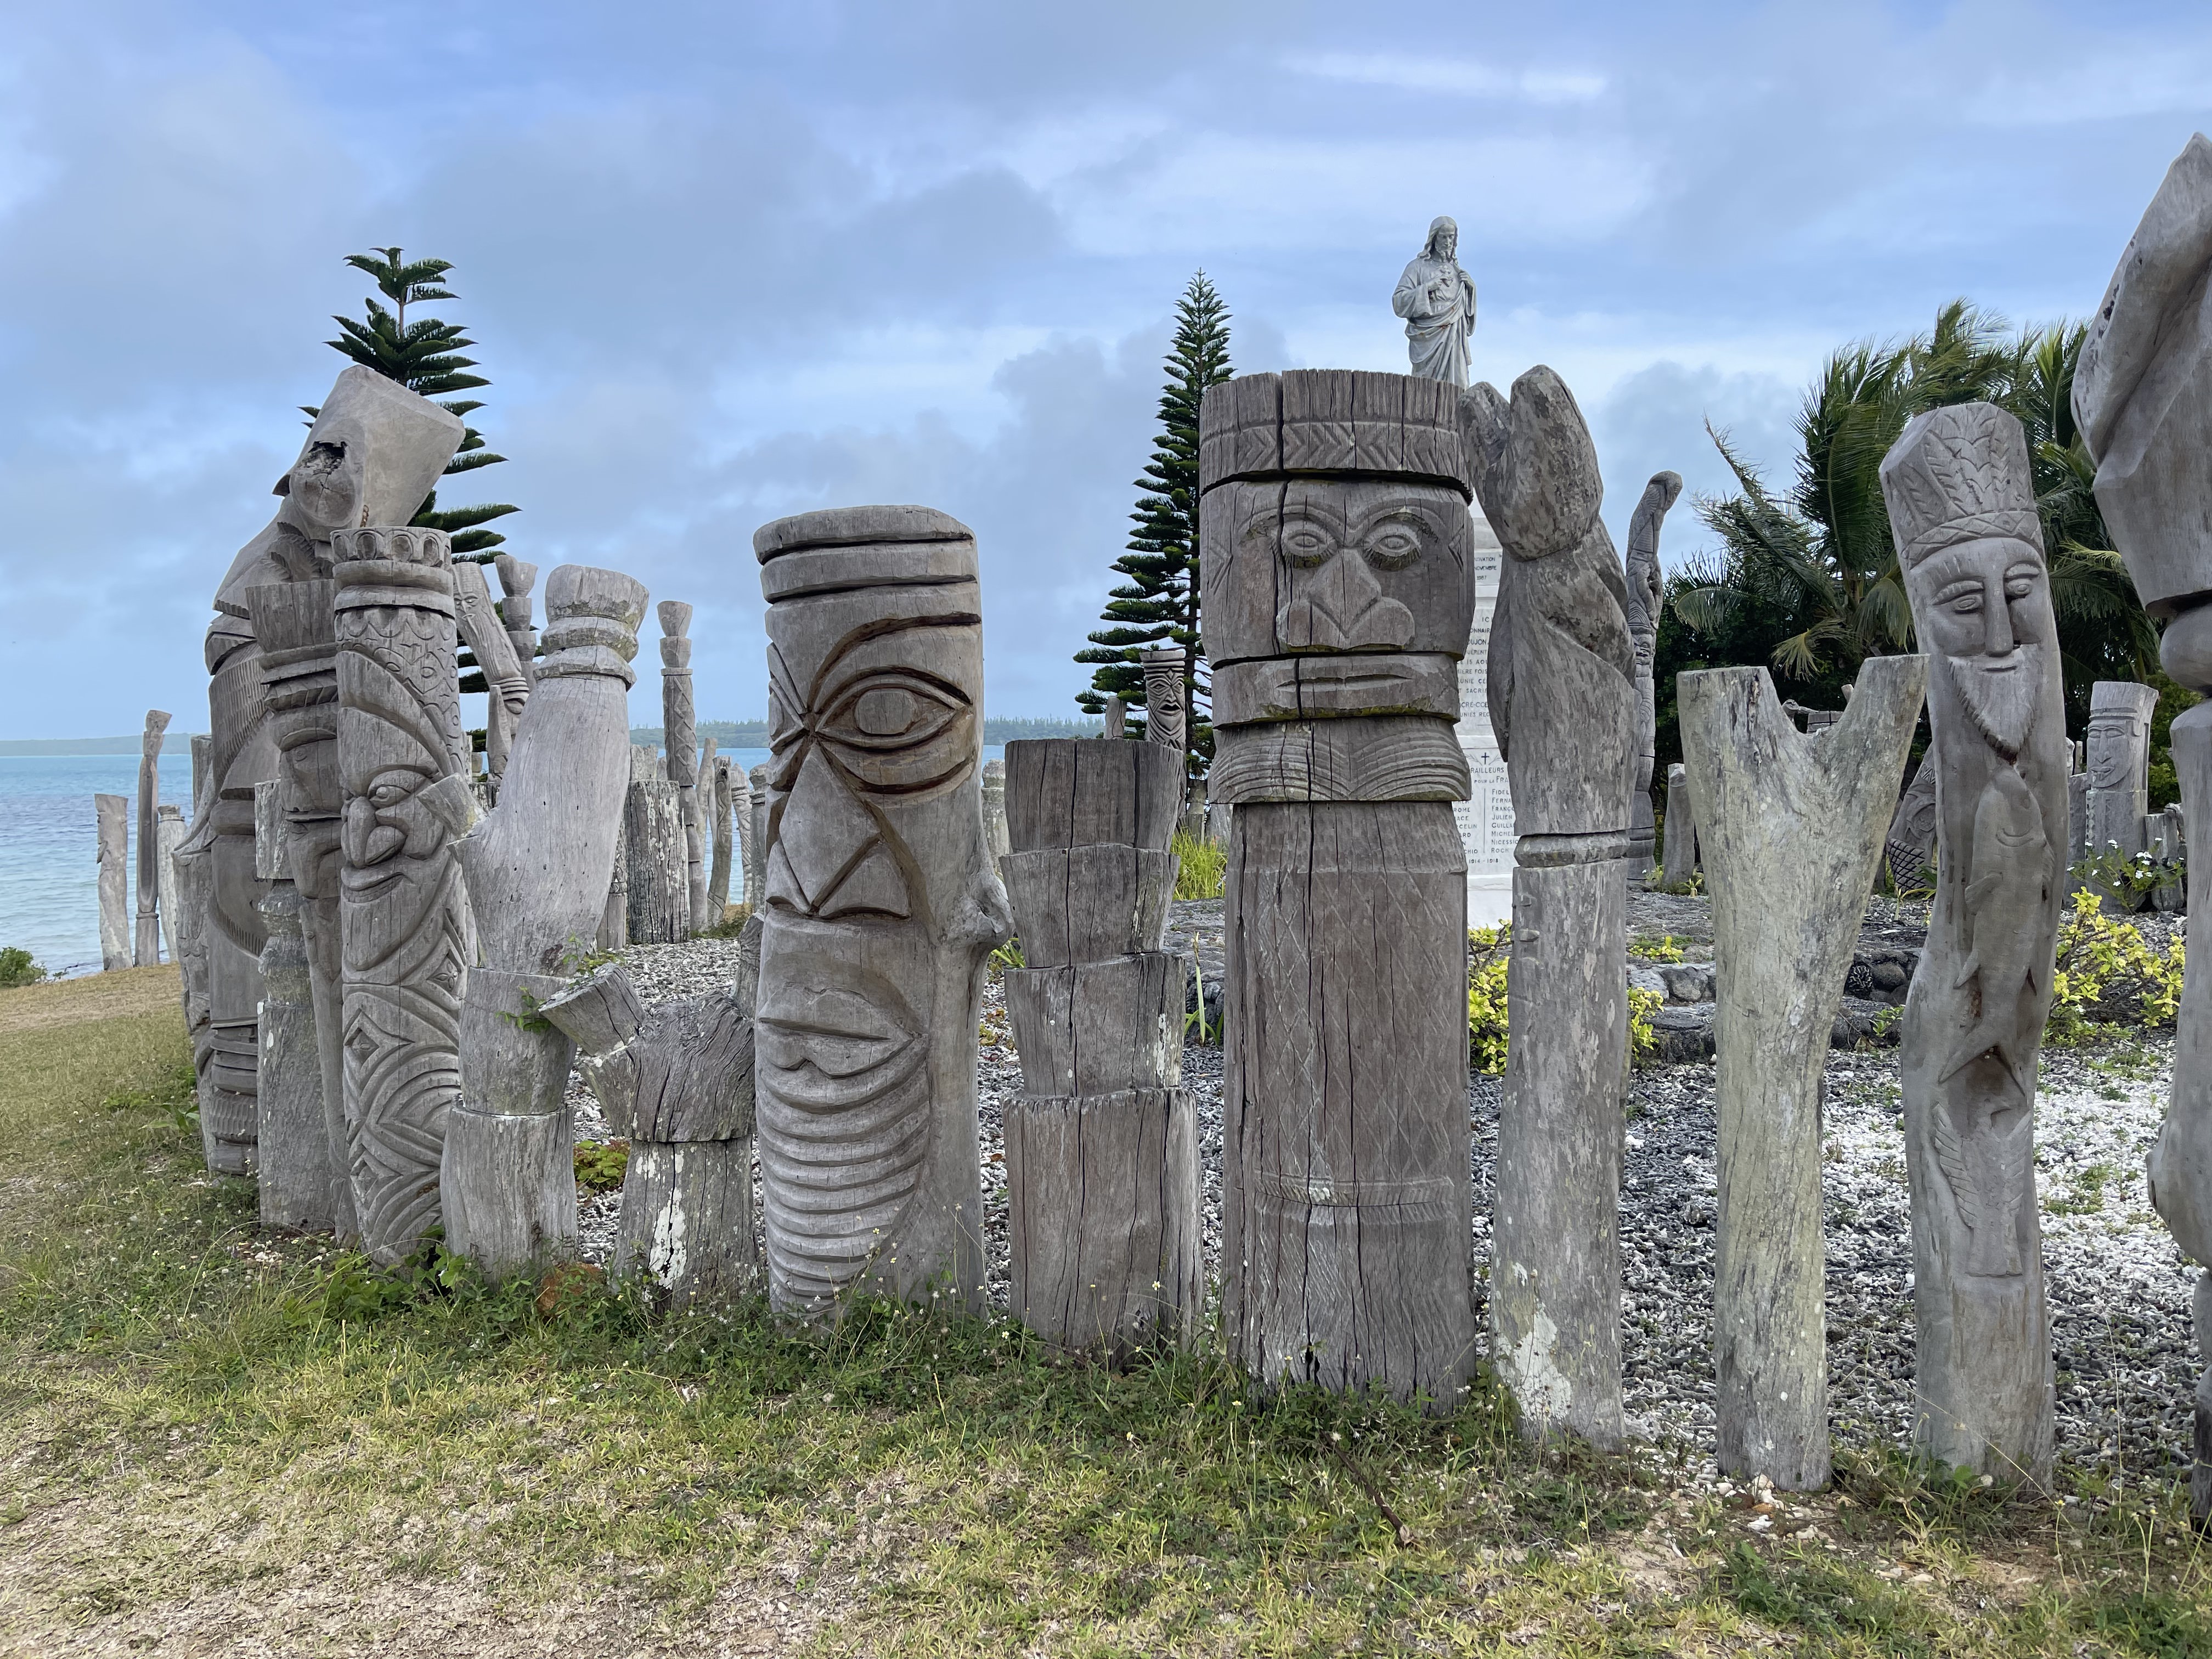 Tiki sculptures